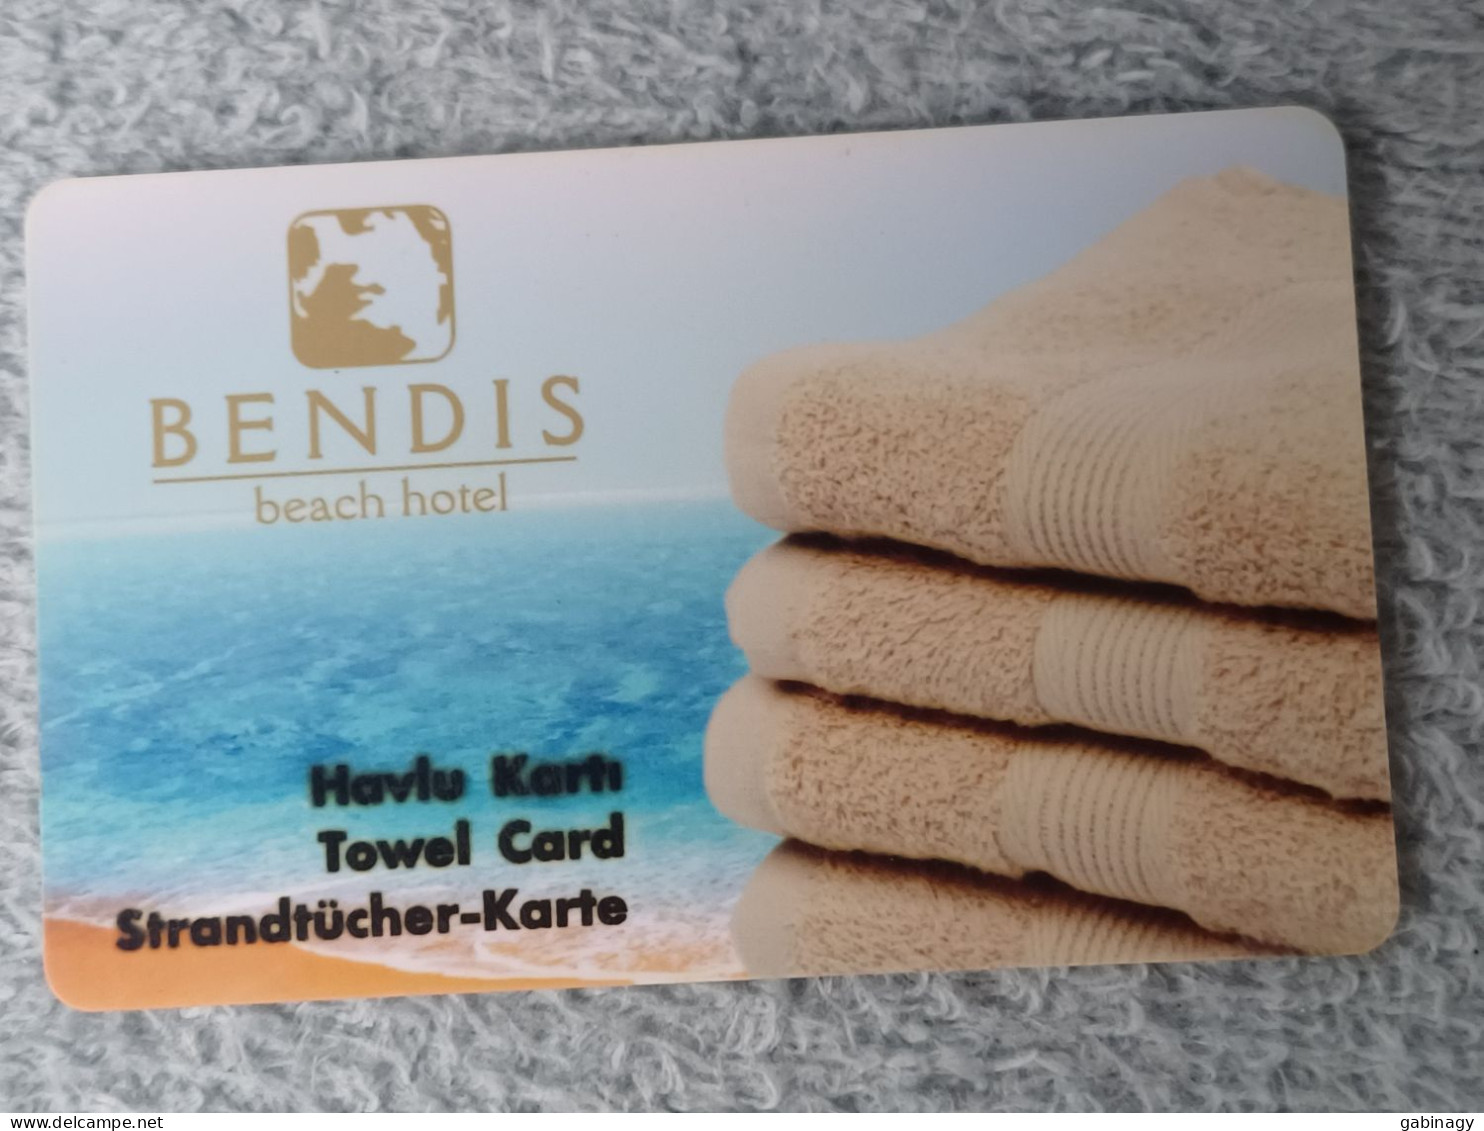 HOTEL KEYS - 2626 - TURKEY - BENDIS BEACH HOTEL - Hotelsleutels (kaarten)